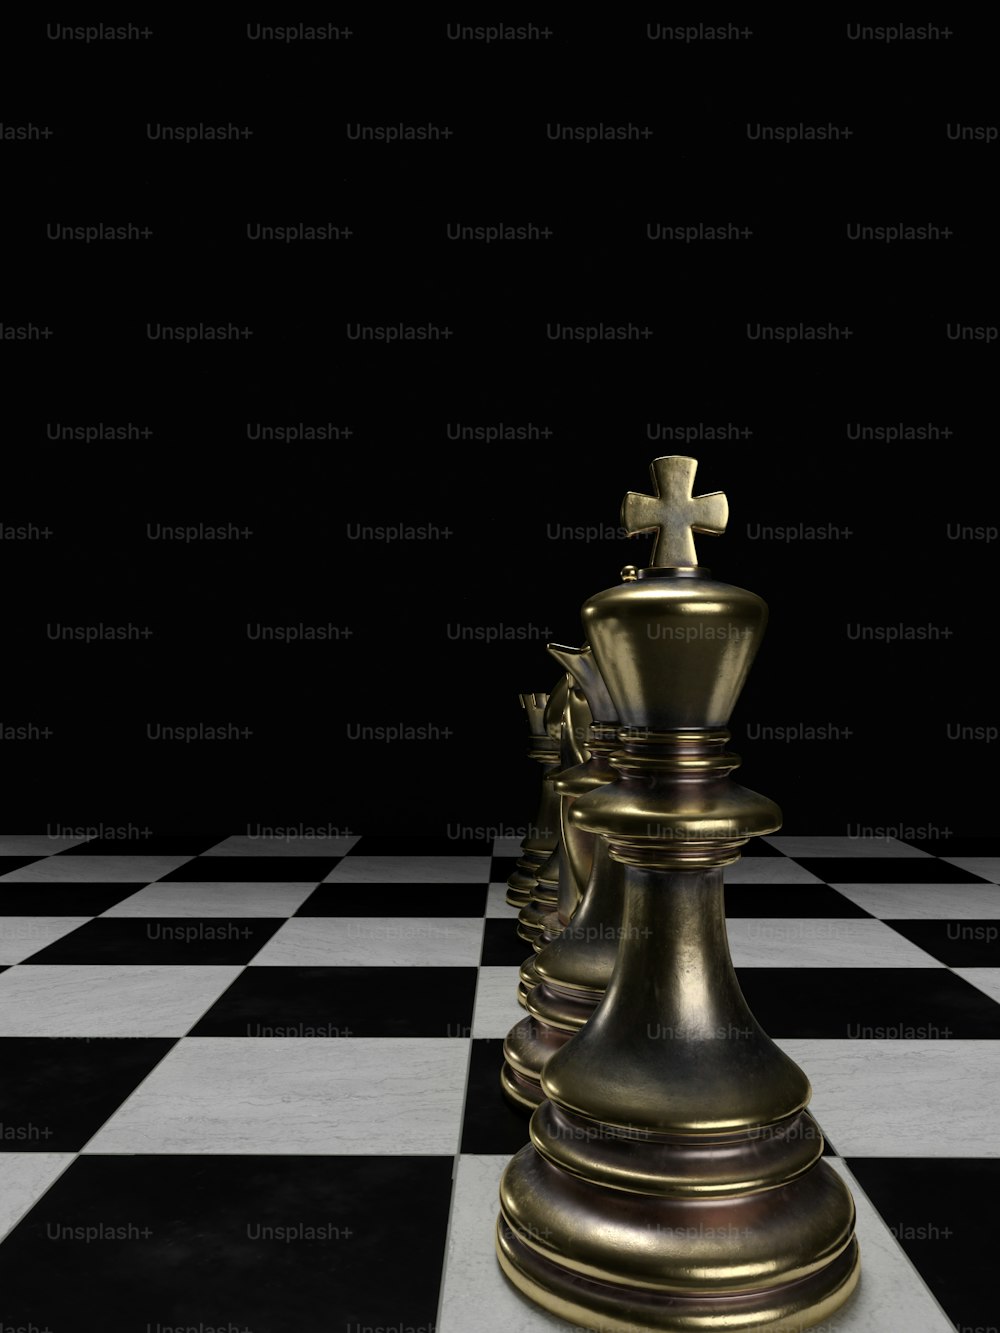 Un pezzo d'oro degli scacchi su un pavimento a scacchi bianchi e neri